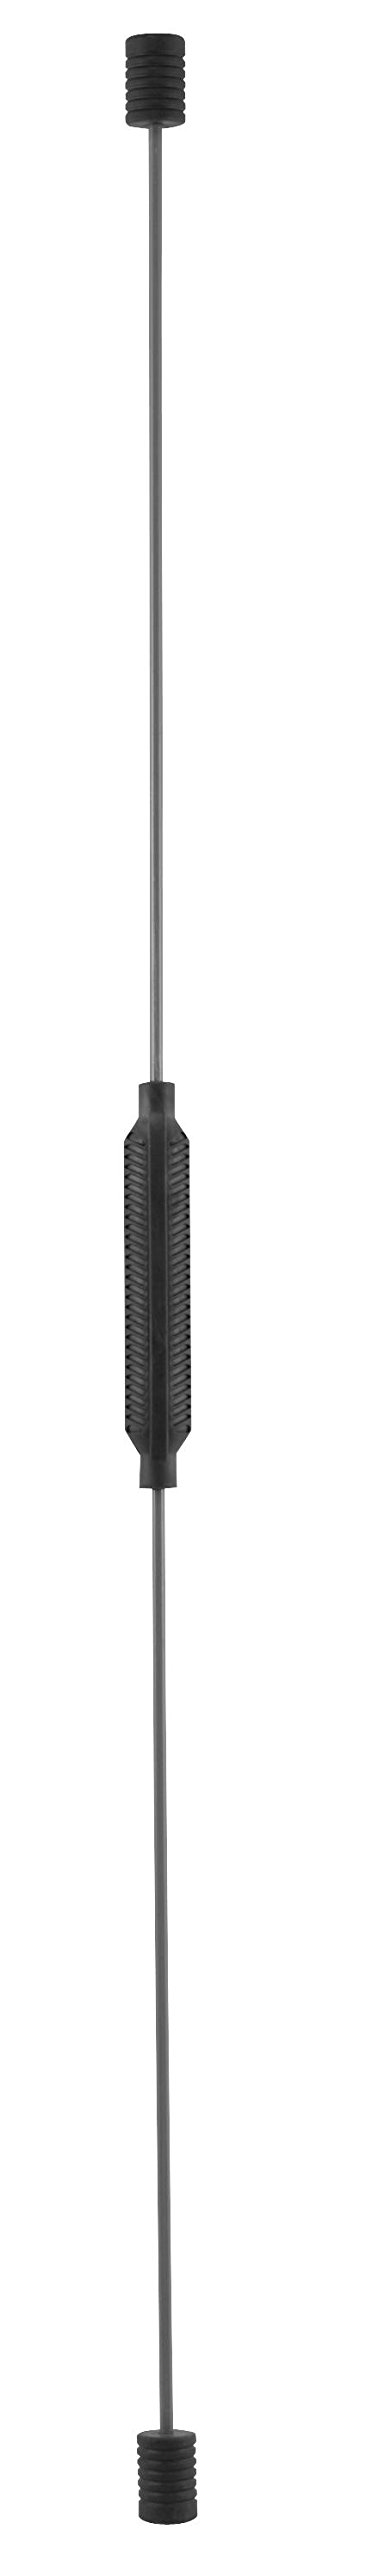 Trendy Sport Unisex – Erwachsene Chicote Schwungstab, Schwarz, 160 x 24 x 19 cm